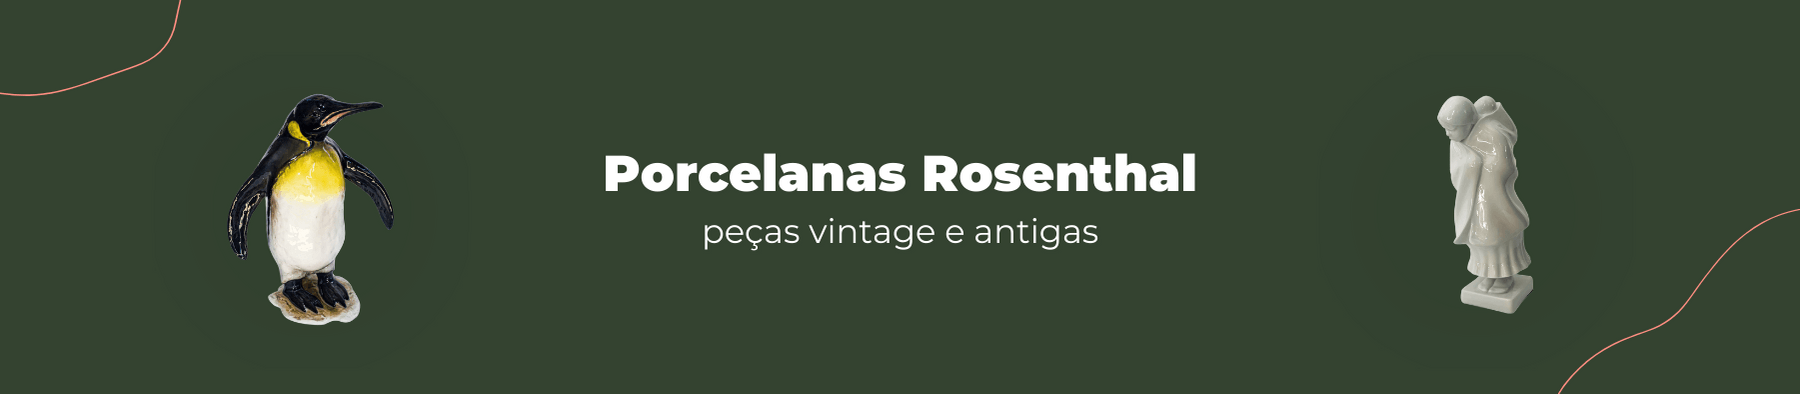 Porcelanas Rosenthal Vintages e Antigas